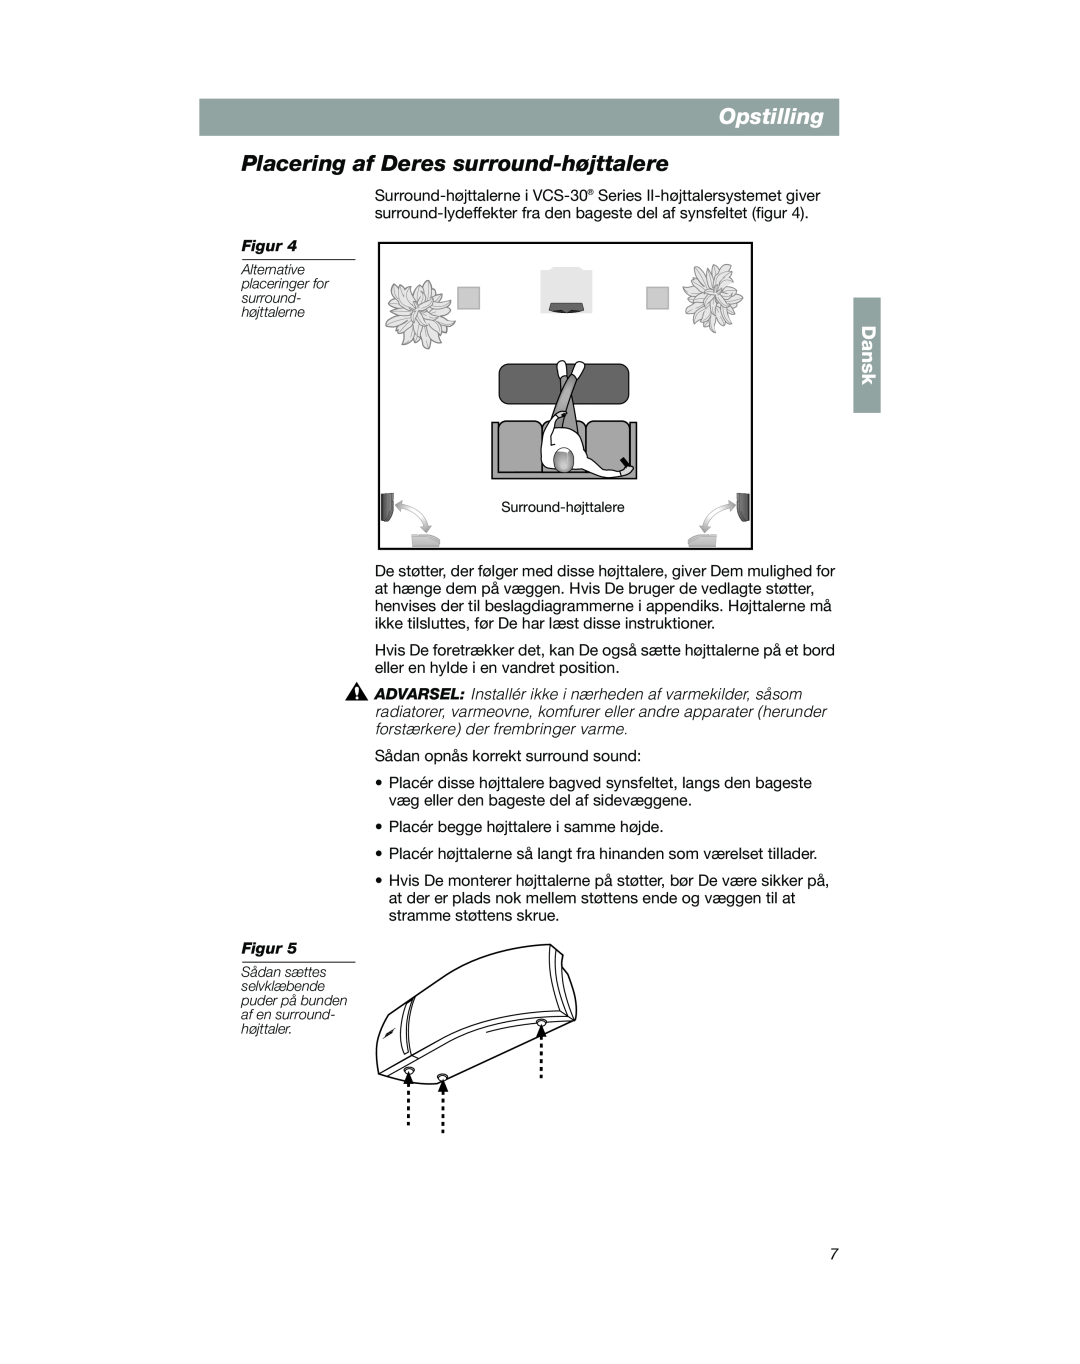 Bose VCS-10 manual Placering af Deres surround-højttalere, Opstilling, Dansk 